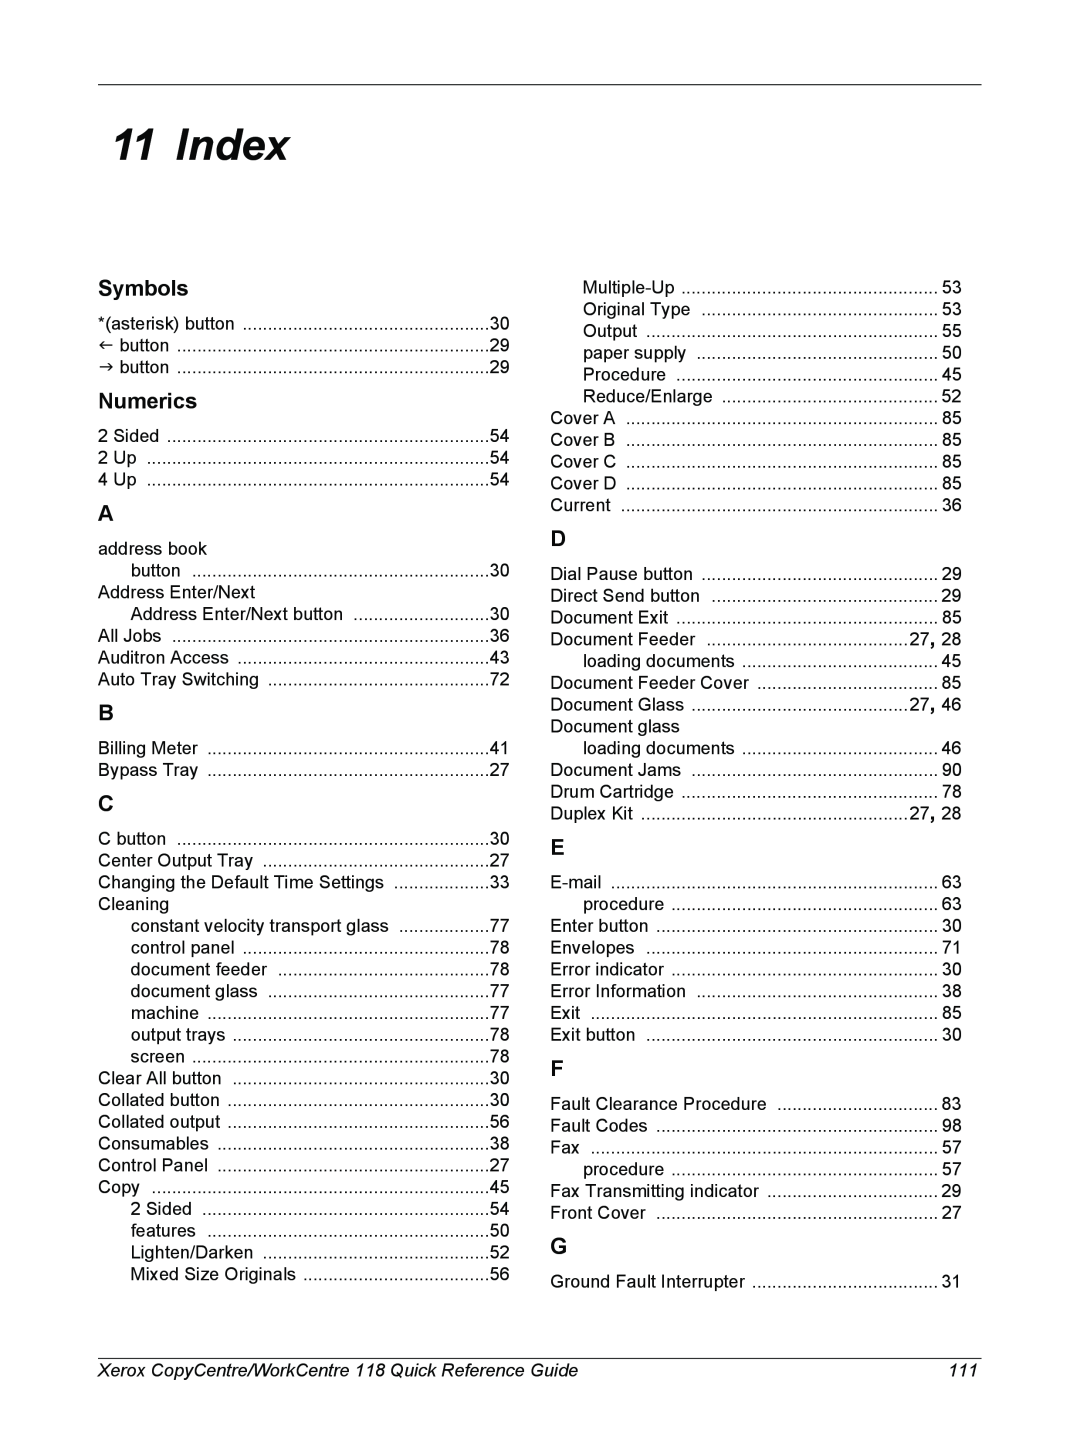 Xerox C118, M118i manual Symbols, Numerics, Index 